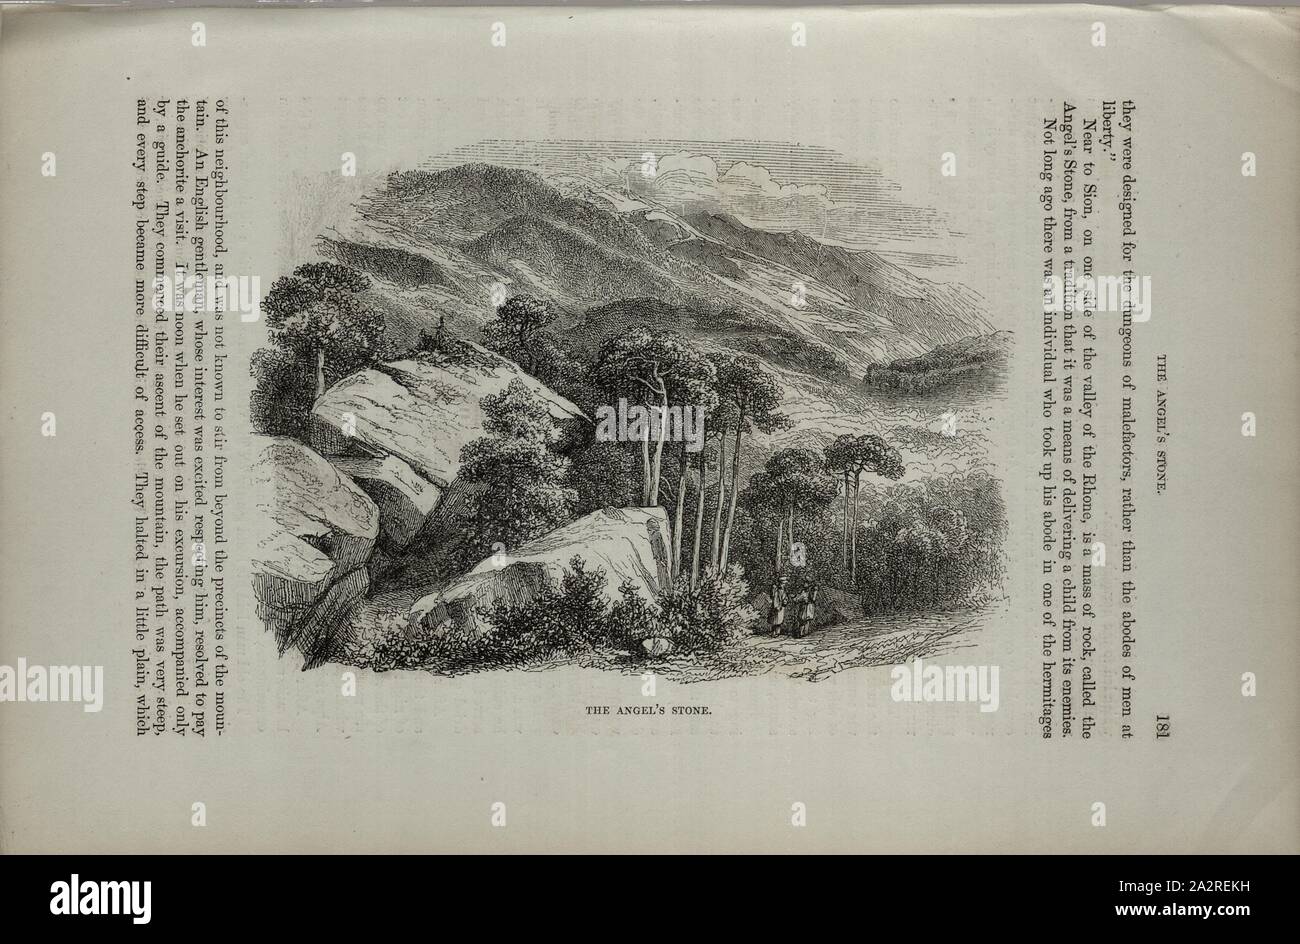 L'angelo della pietra, roccia nella Valle del Rodano vicino a Sion, p. 181, 1854, Charles Williams, Alpi, Svizzera e nord Italia. Londra: Cassell, 1854 Foto Stock